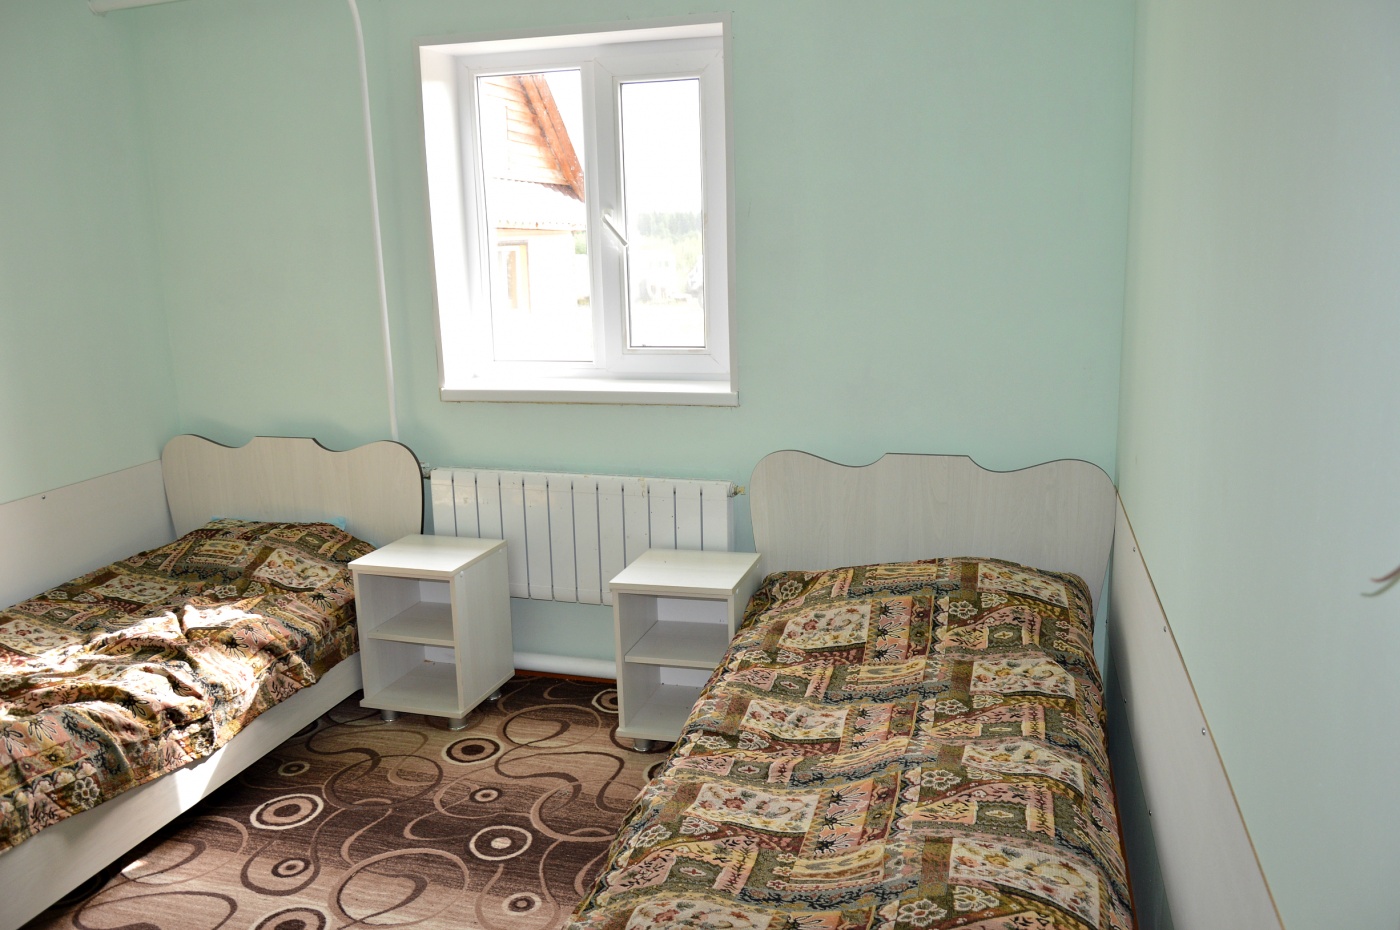 Гостевой дом «Чистоп» Свердловская область 5-местный номер в гостинице, фото 1